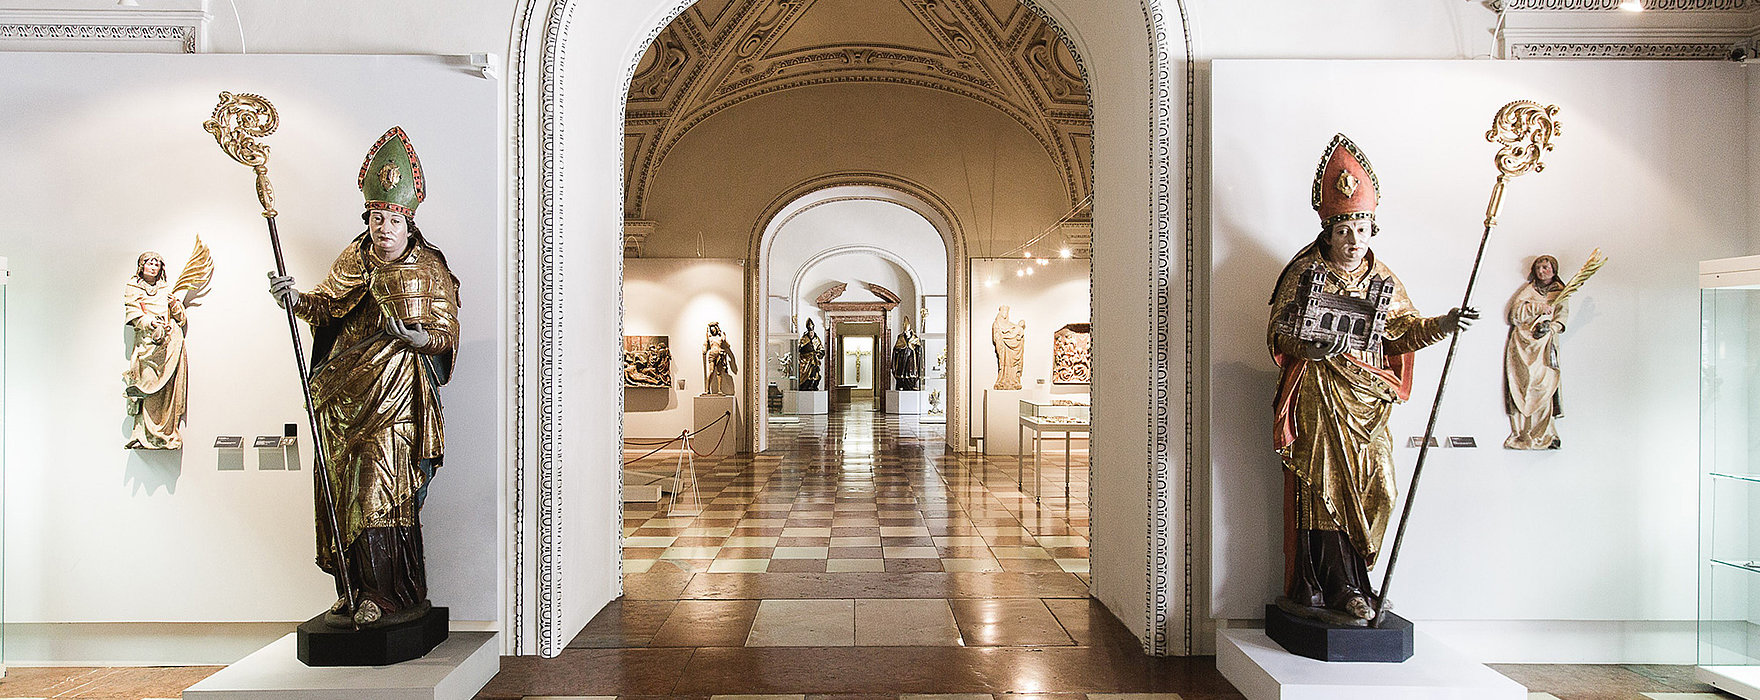 Eingangsbereich Dommuseum mit lebensgroßen Statuen Hl. Rupert und Hl. Virgil